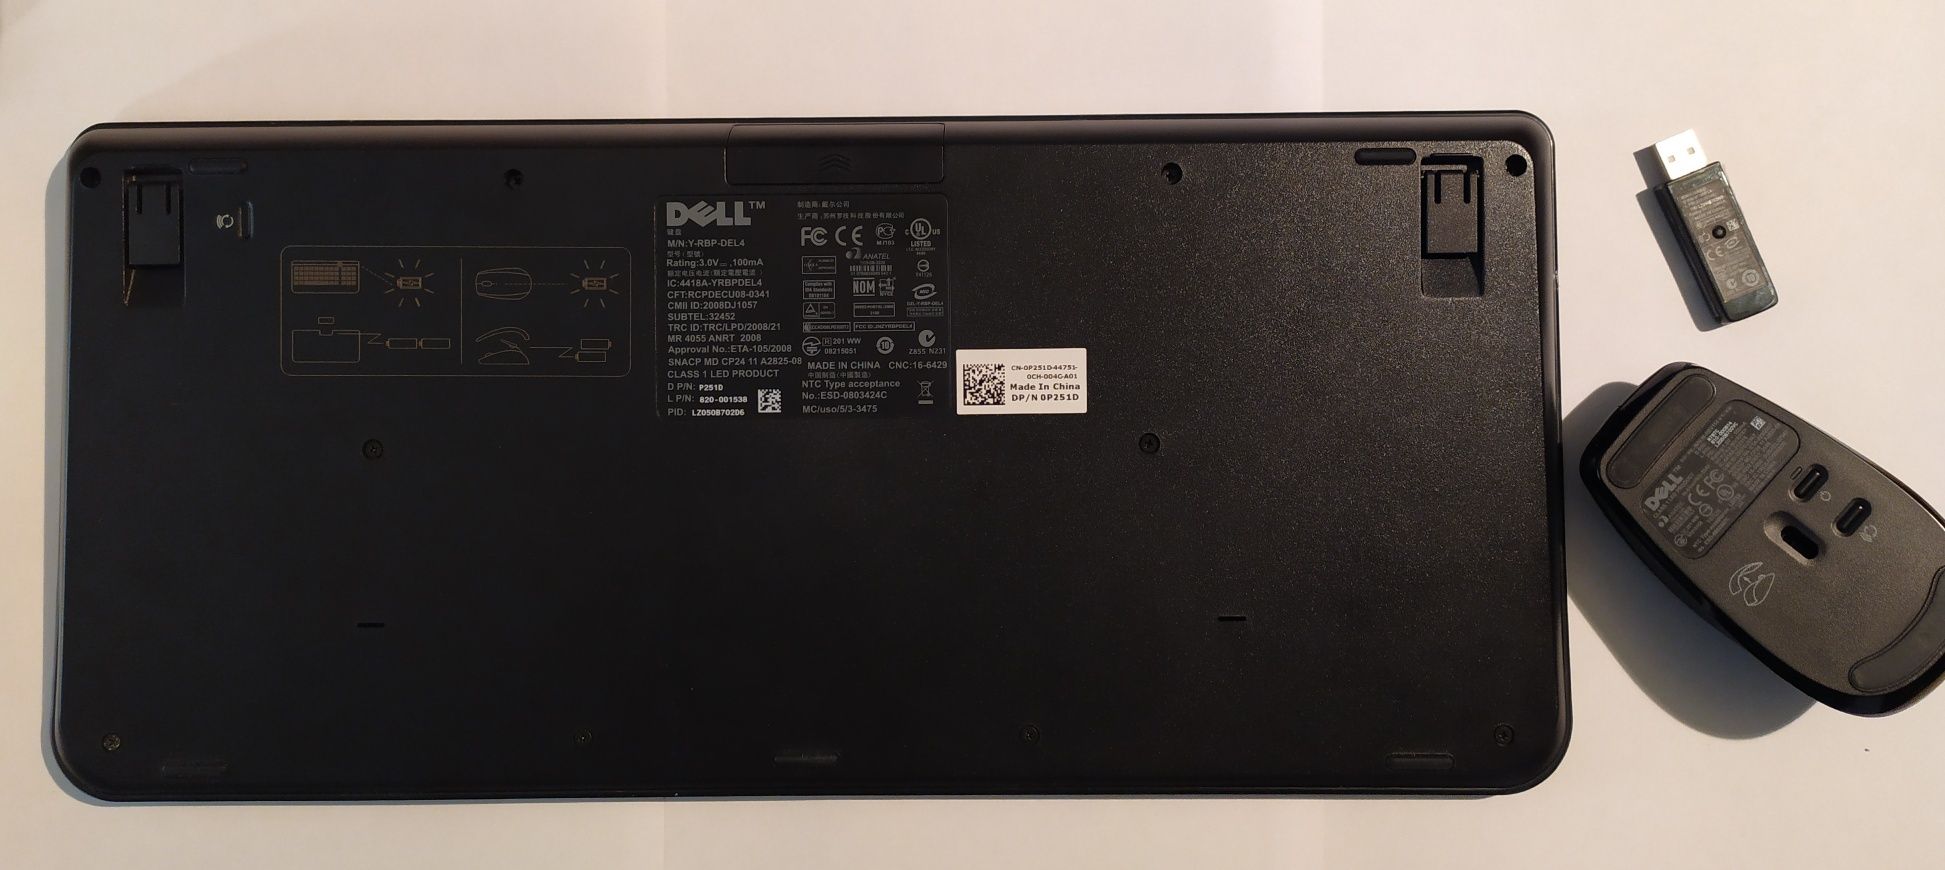 Klawiatura bezprzewodowa Dell Y-RBP-DEL4 wraz z myszką - komplet